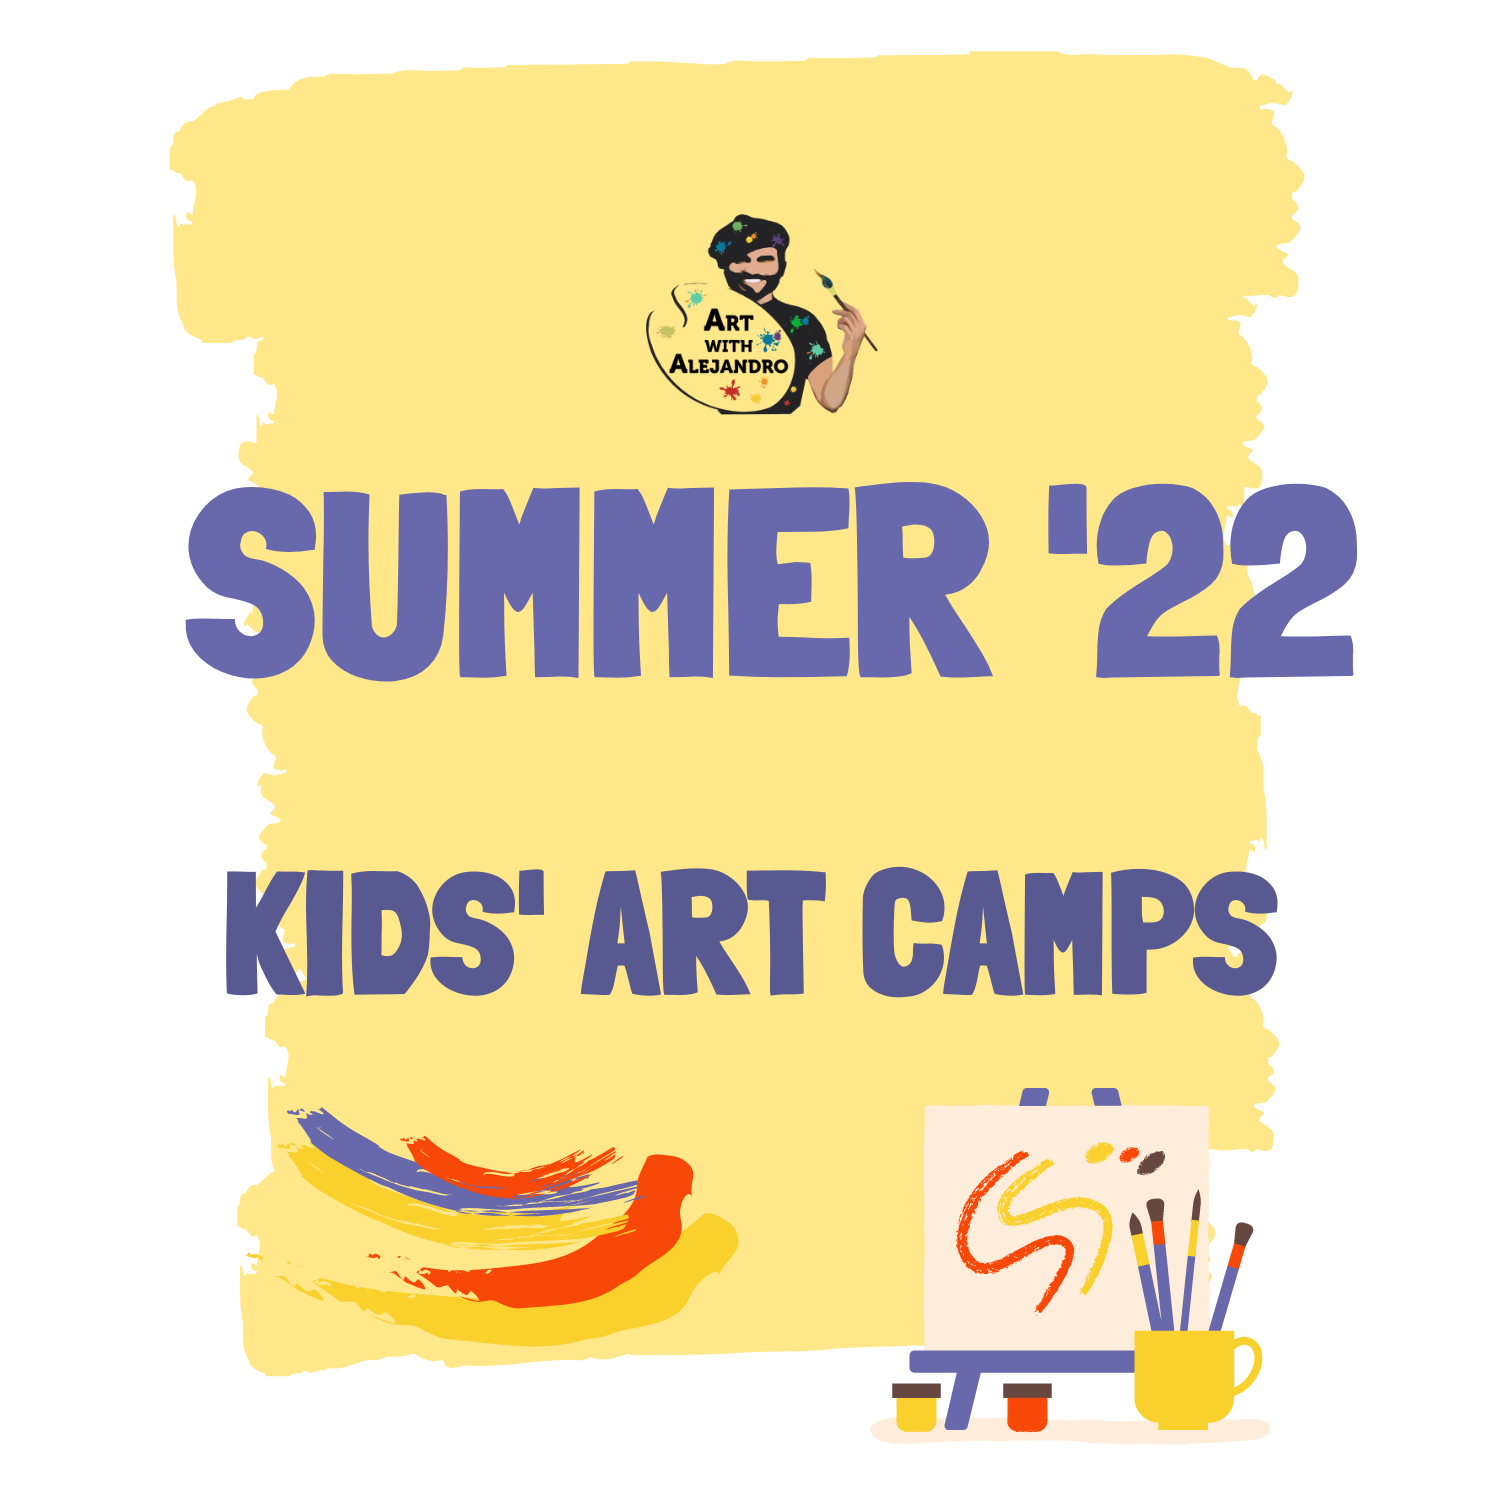 Summer '22 Kids' Art Camp